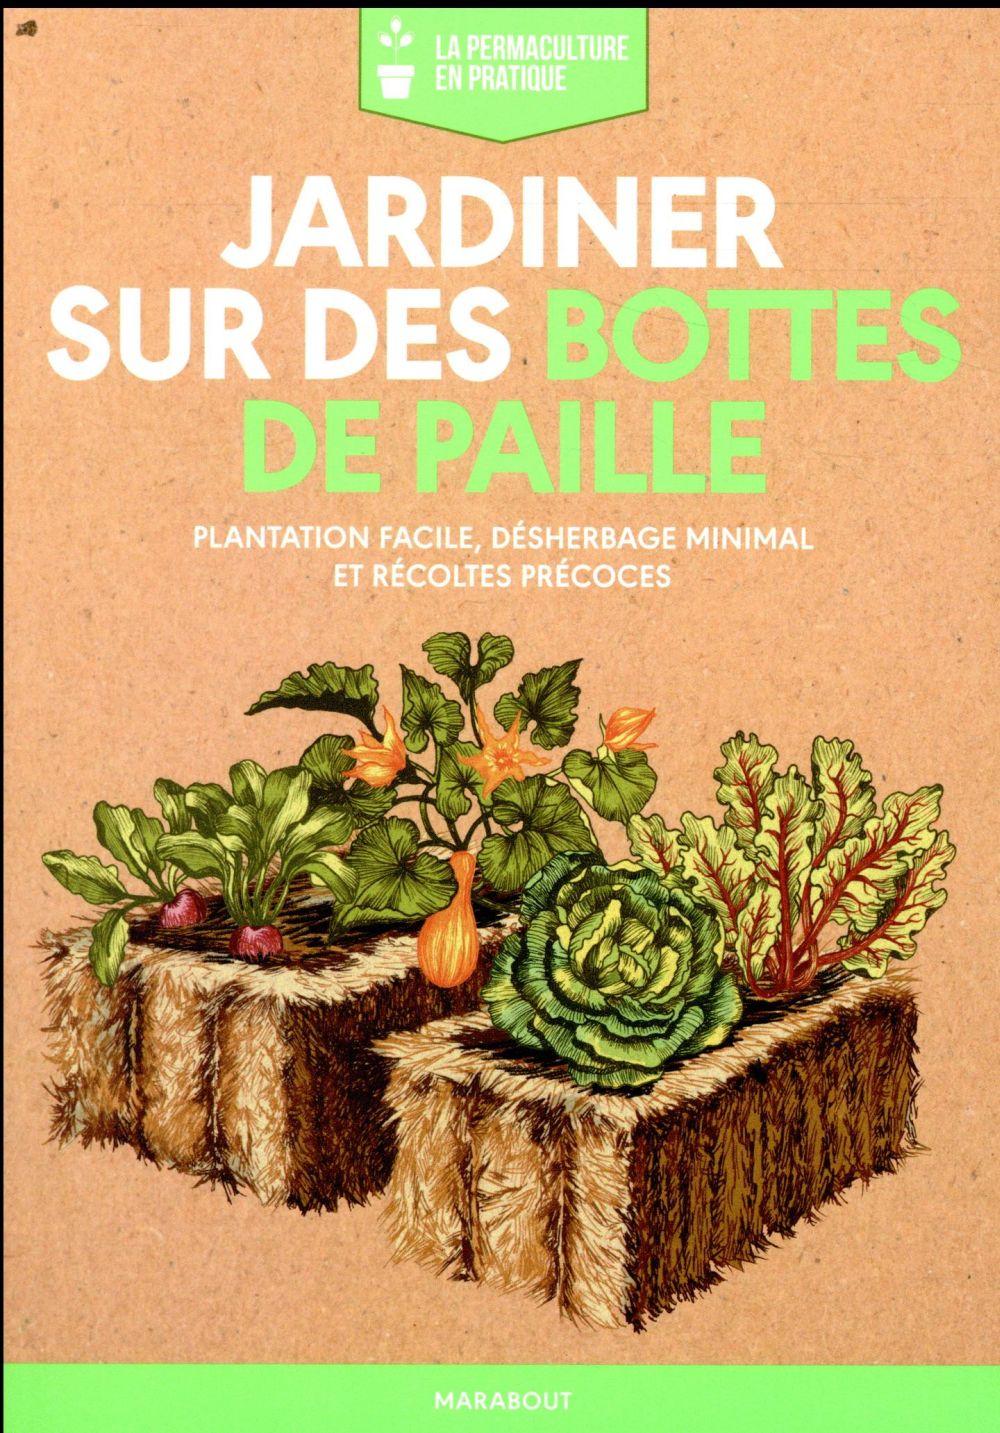 Vente Livre :                                    Jardiner sur des bottes de paille
- Collectif                                     